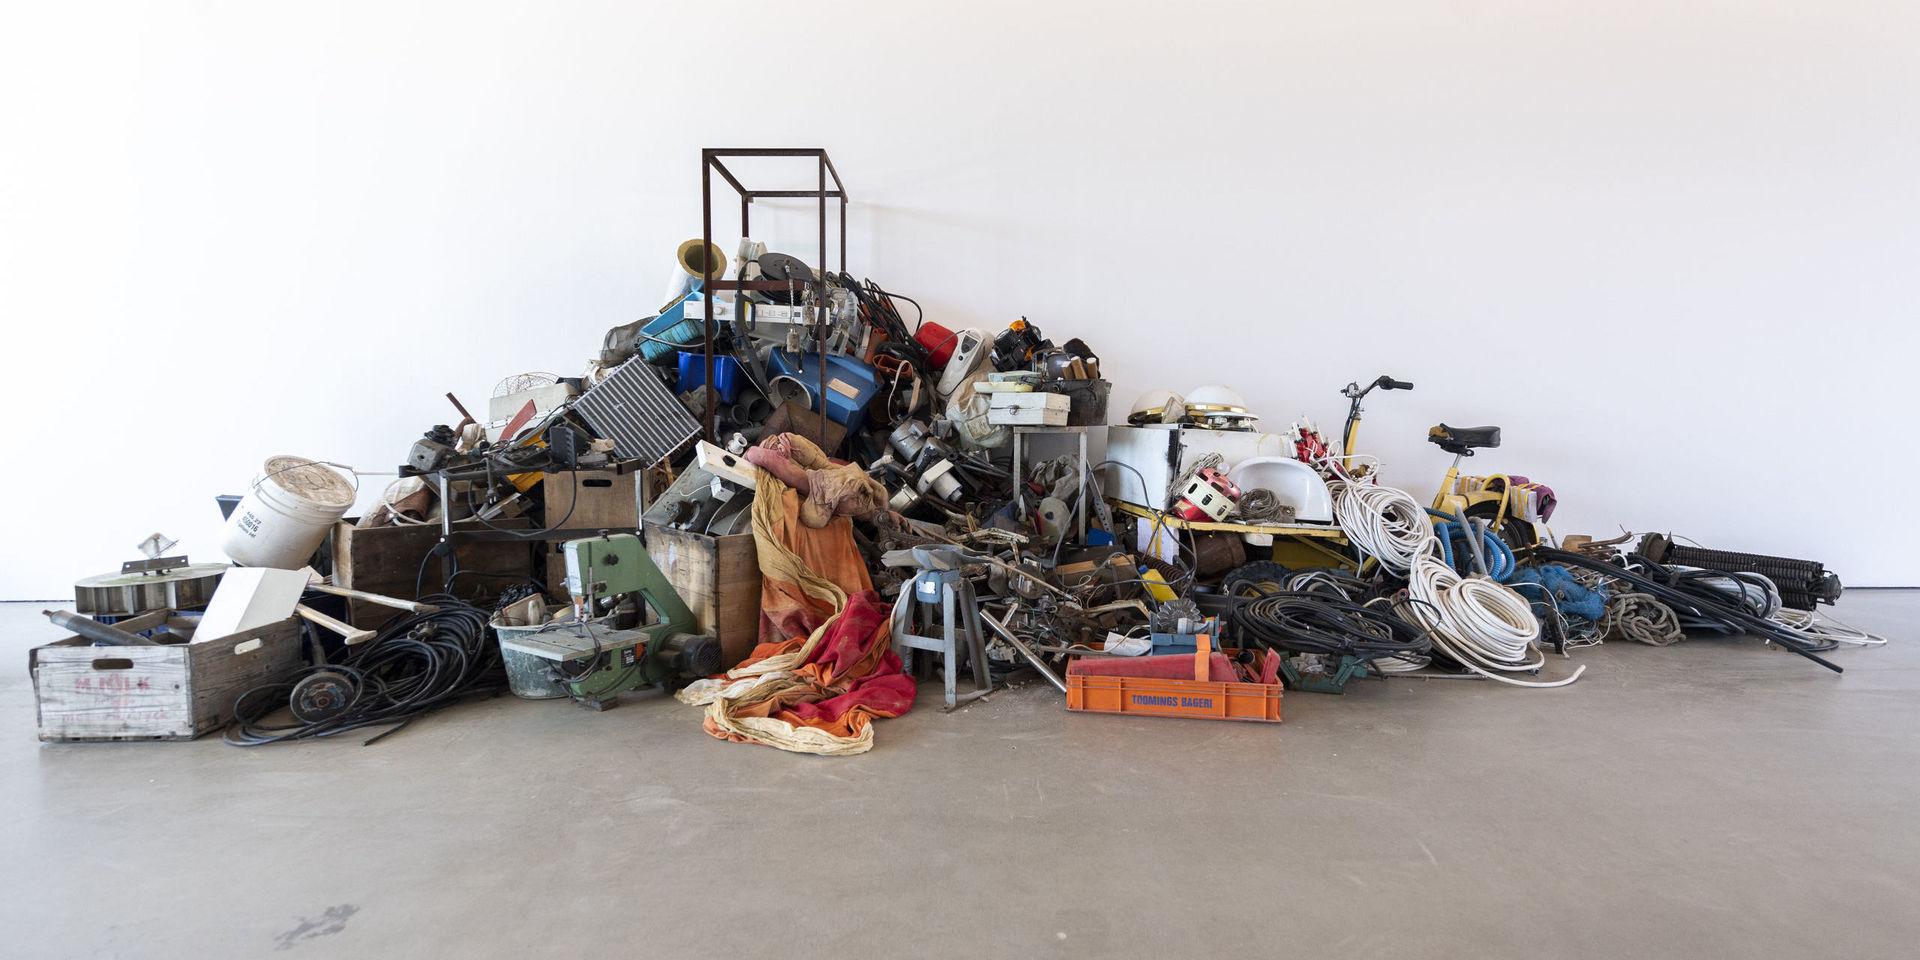 Bråte, cyklar, sladdar och metall – Éva Mags utställning 'Det finns en plan för det här' ställer frågor och vår tids slit och släng-mentalitet.